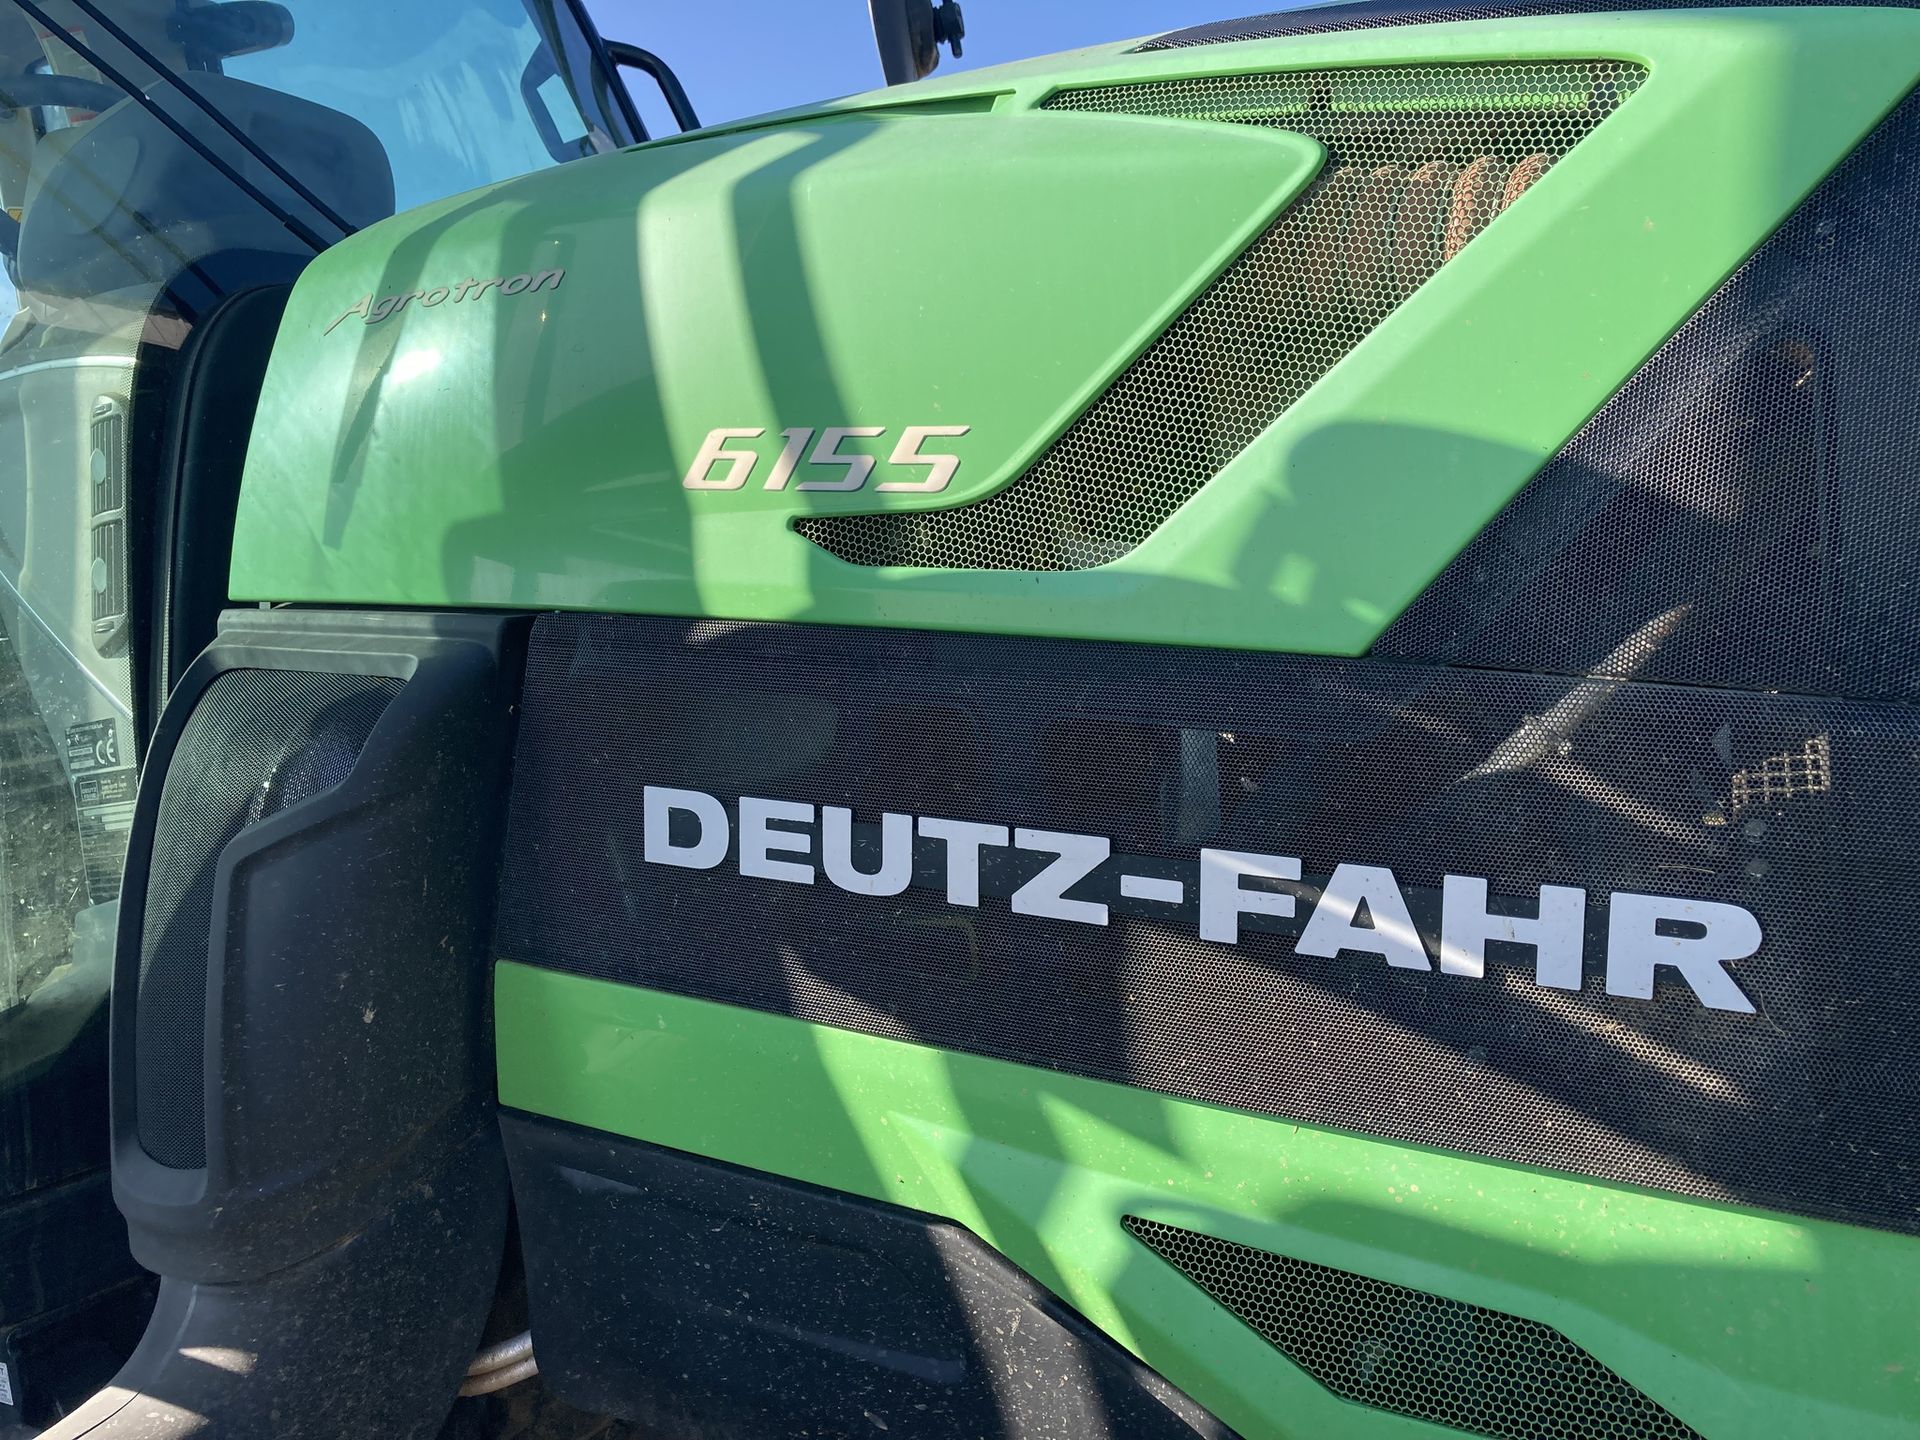 2018 Deutz Fahr 6155